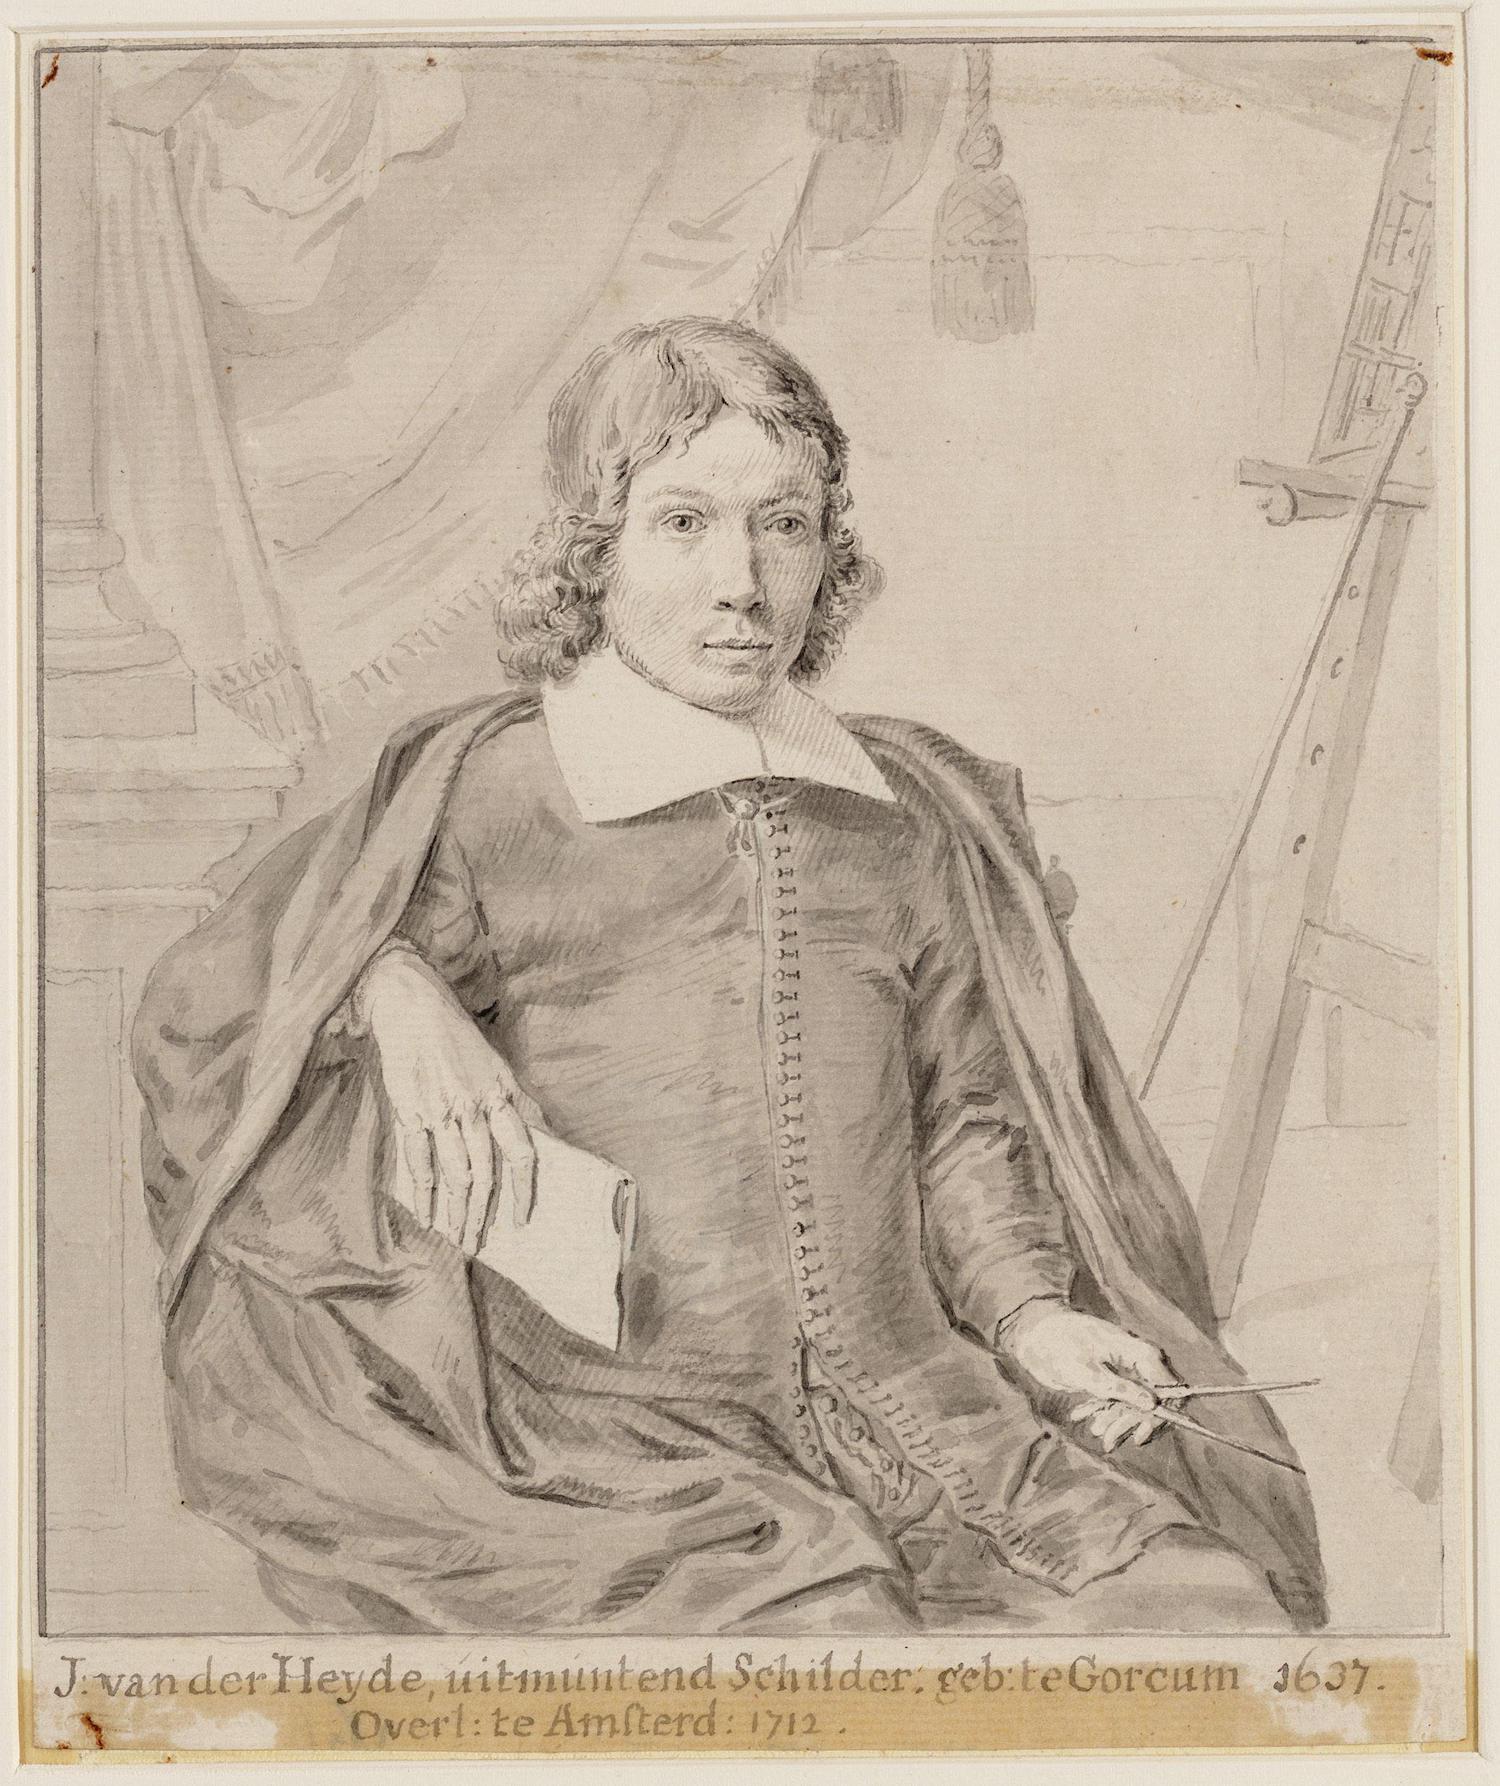 Jan van der Heyden - 5. März 1637 - 28. März 1712